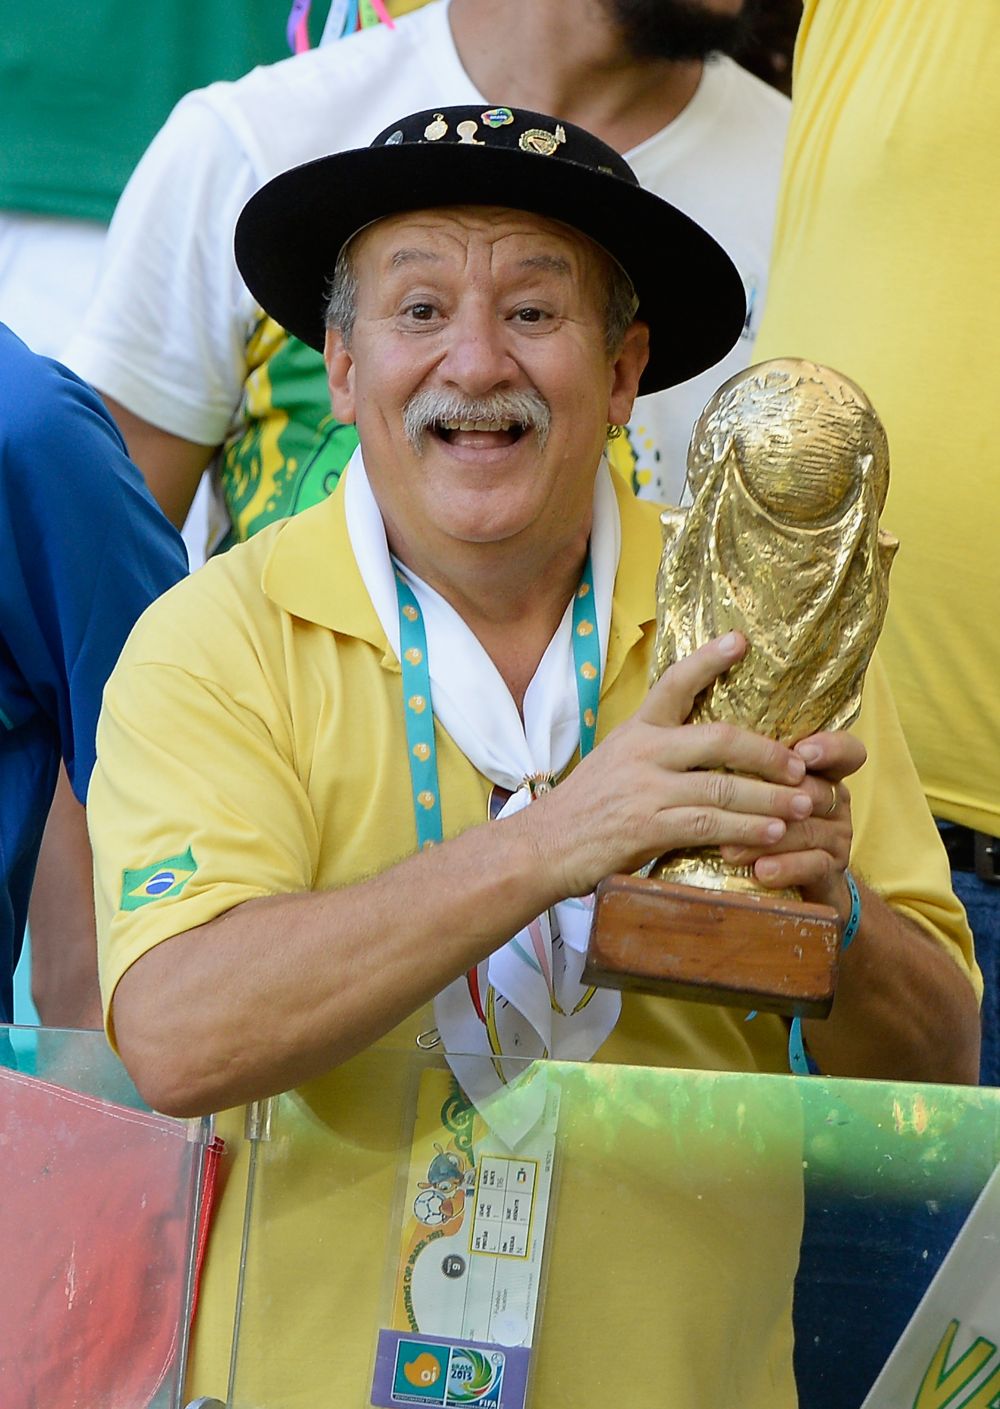 Fotbalul plange dupa unul dintre cei mai cunoscuti suporteri: celebrul "Gaucho da Copa", fanul care a mers la 7 Campionate Mondiale cu Brazilia, a incetat din viata_1